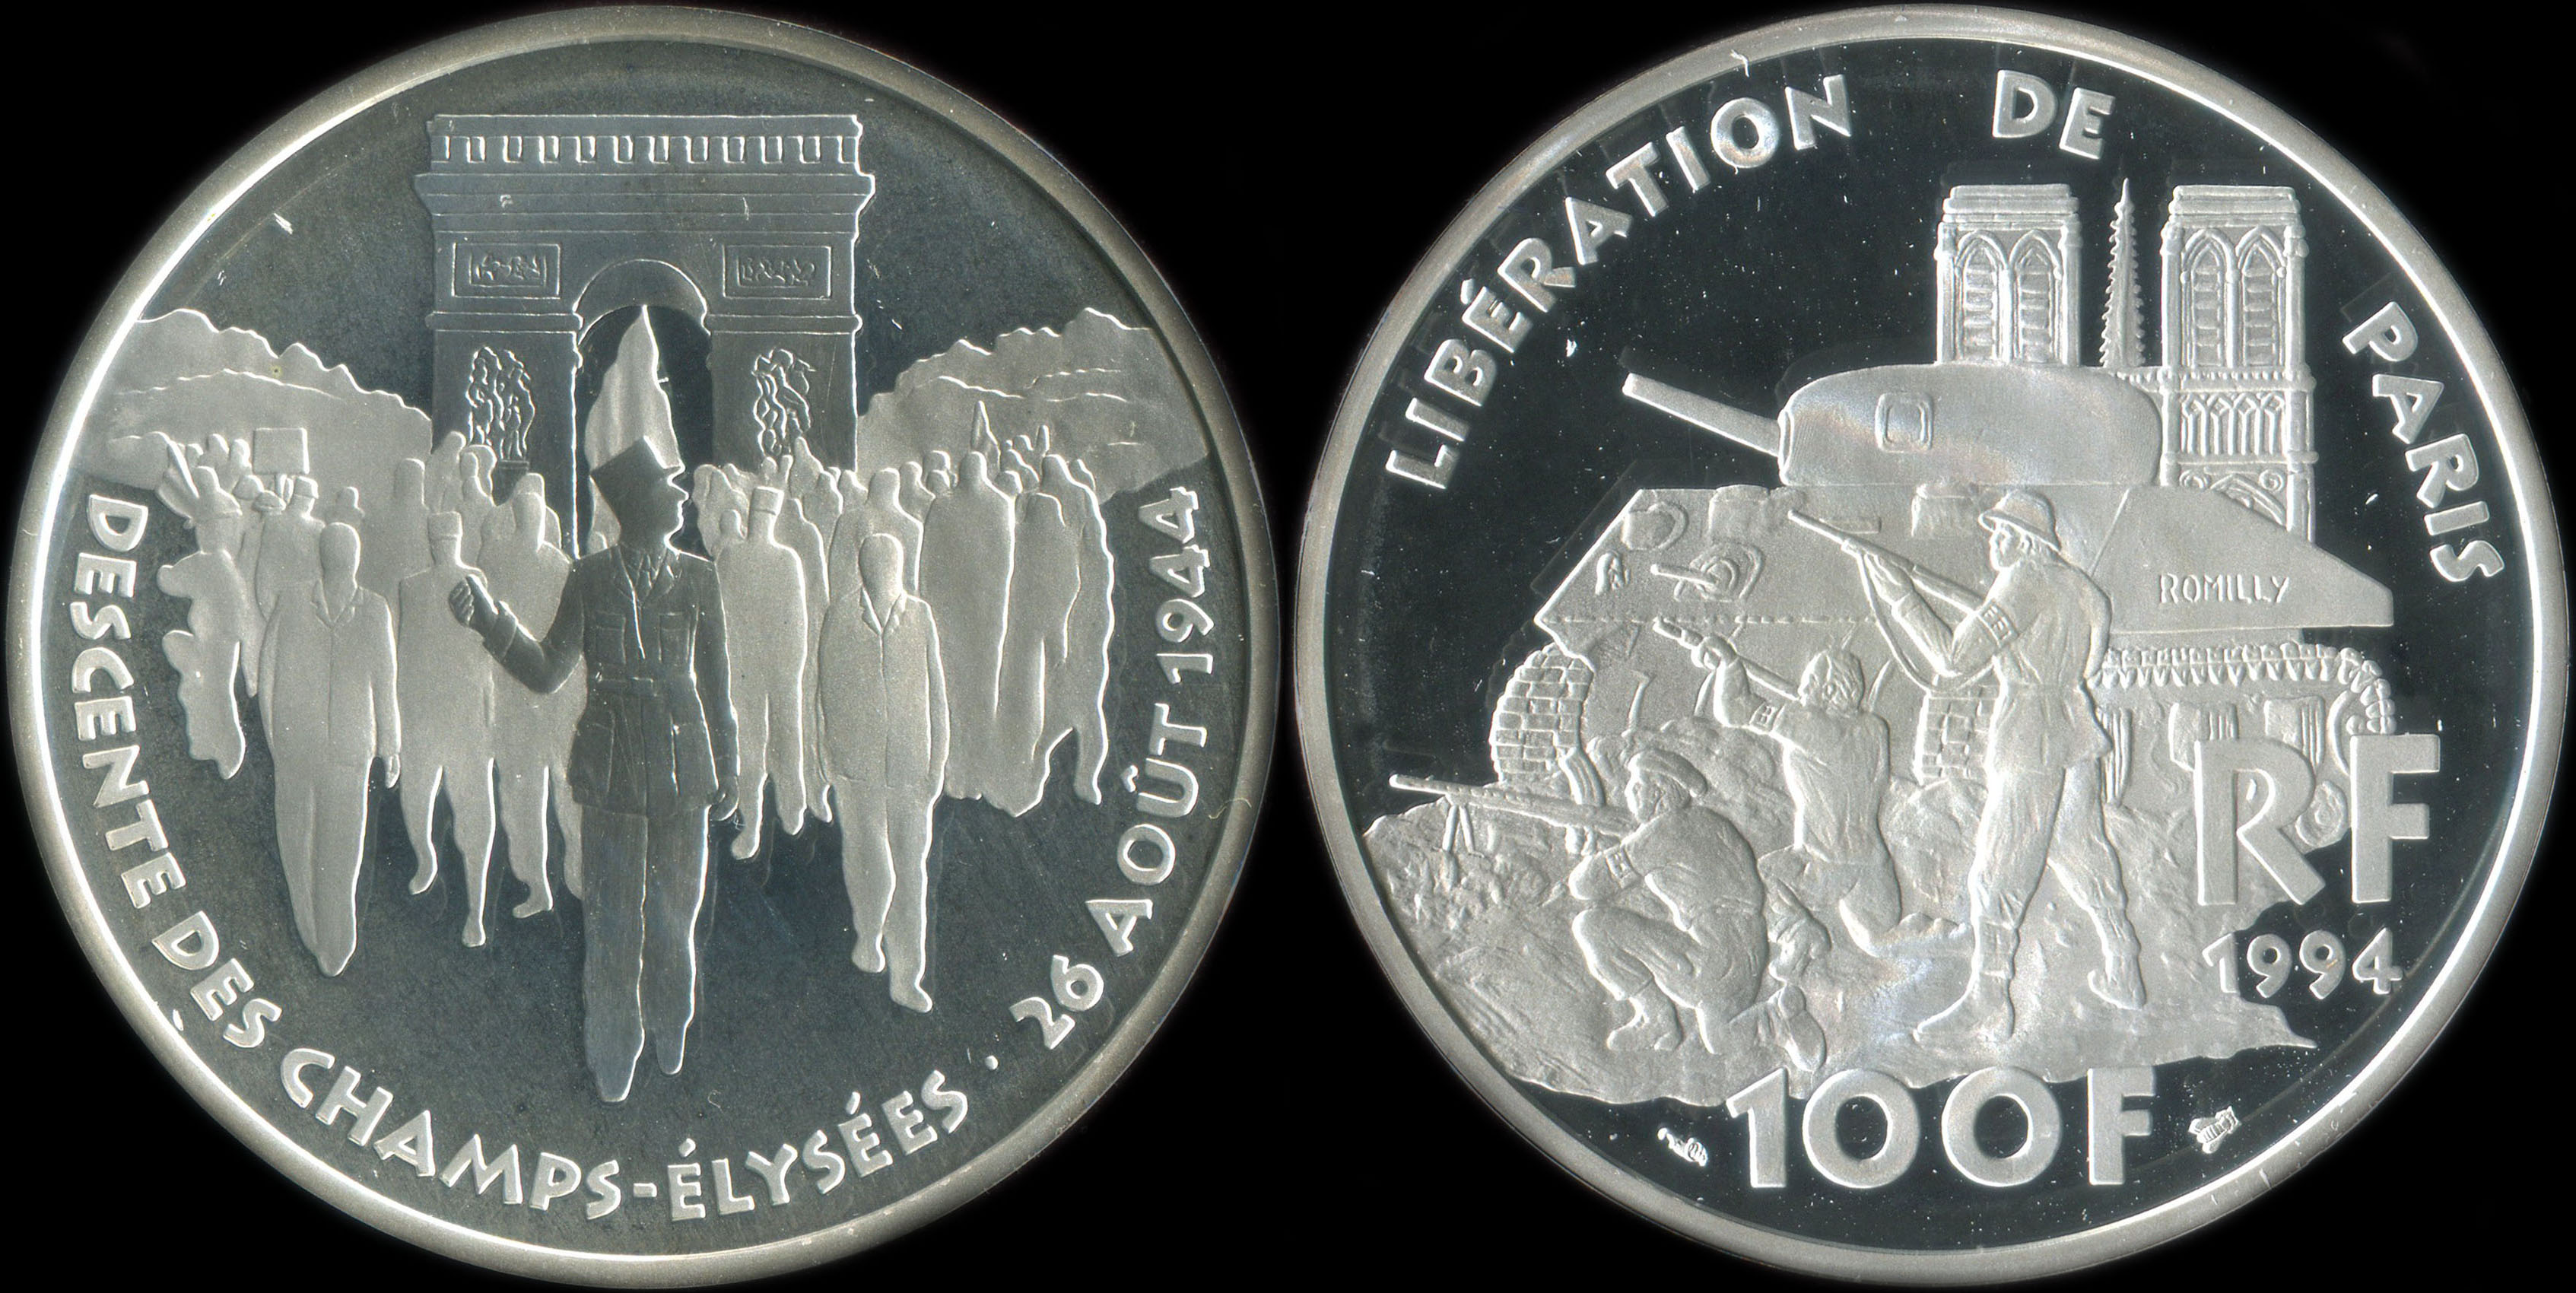 Pice de 100 francs 1994 - La Libert retrouve - Libération de Paris - Descente des Champs-Elysées